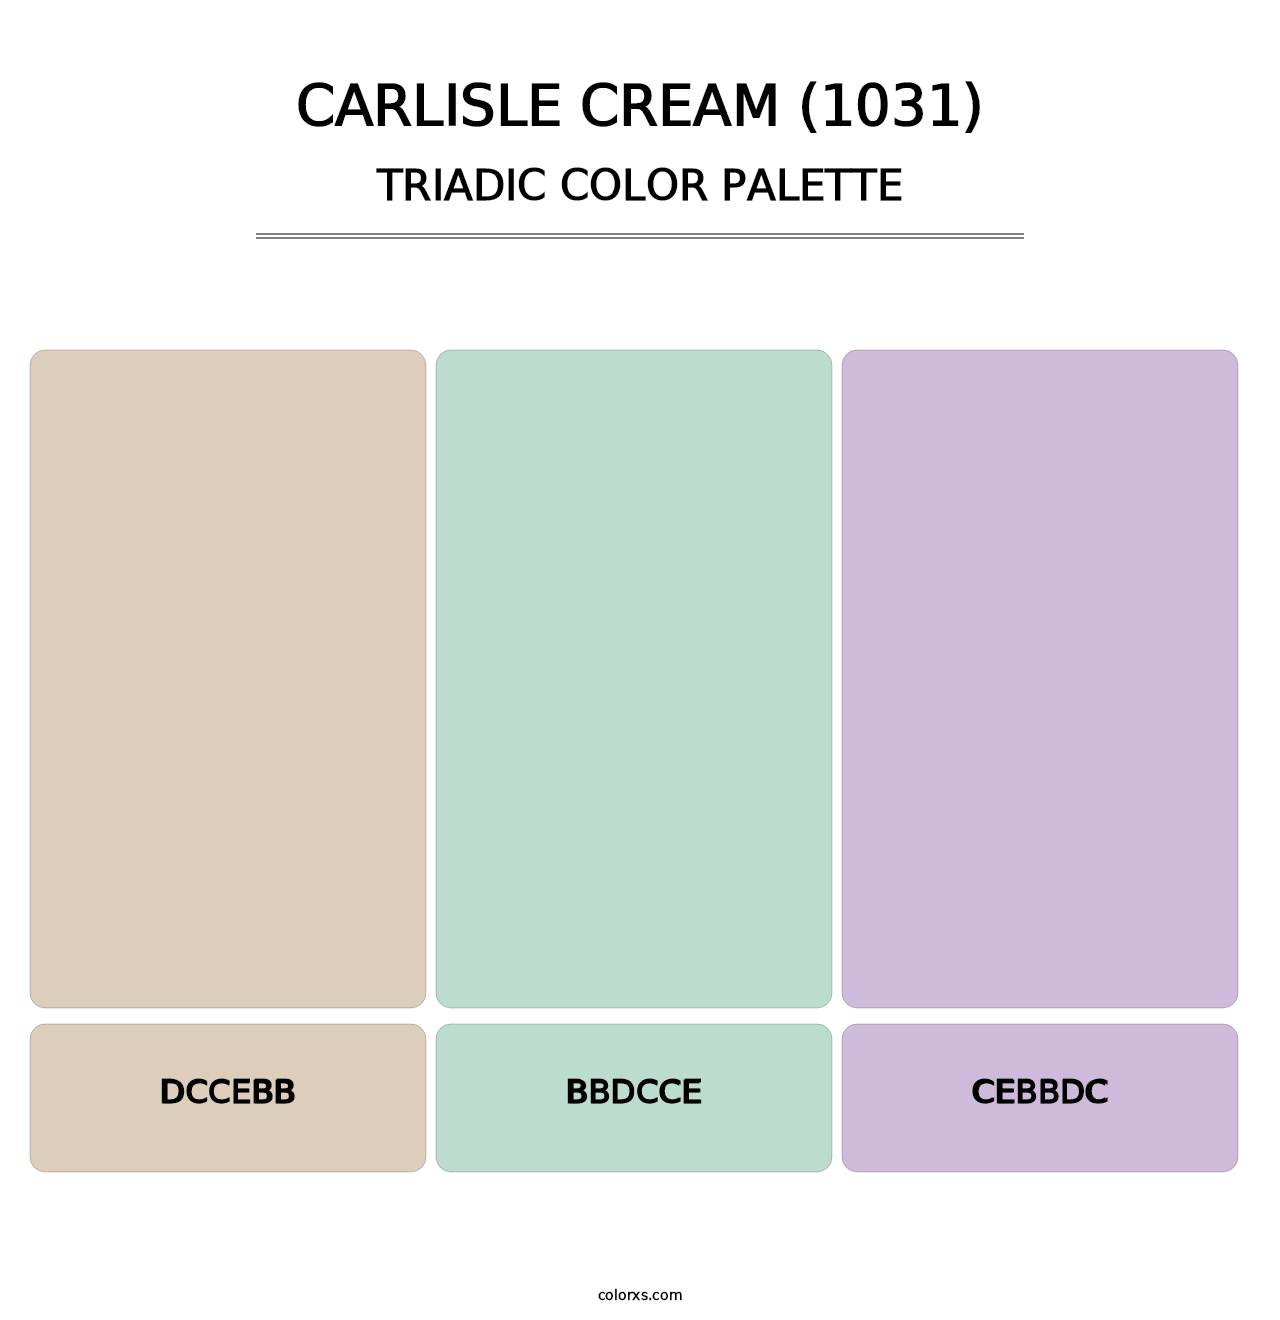 Carlisle Cream (1031) - Triadic Color Palette